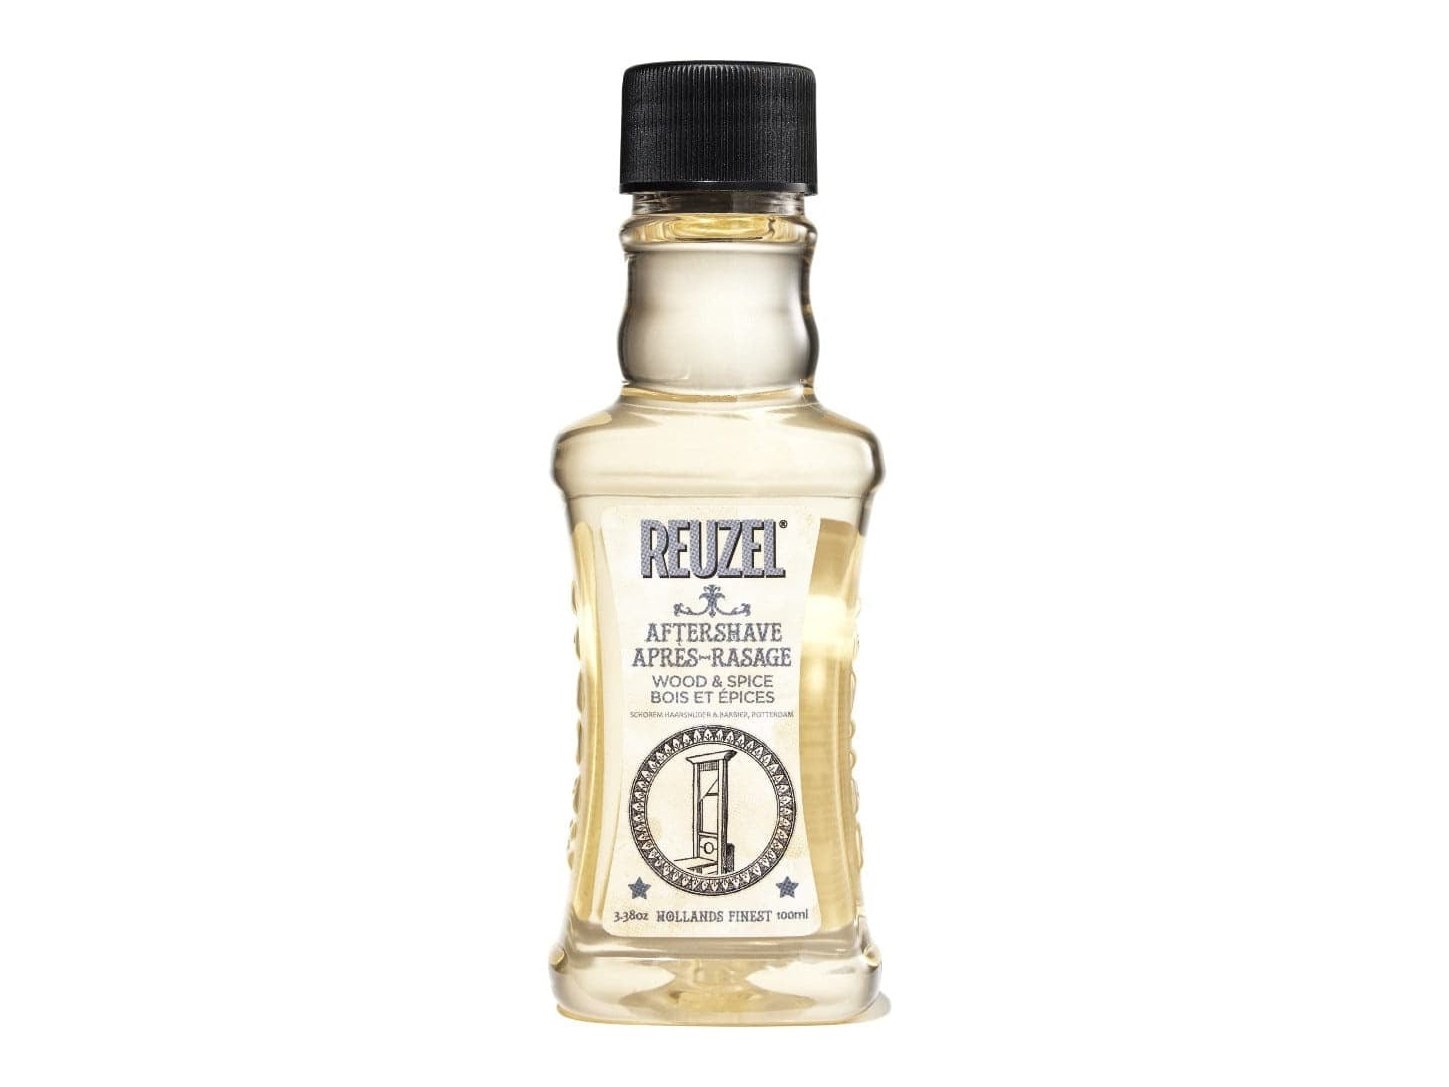 Reuzel Wood & Spice Aftershave, 3.38 oz.